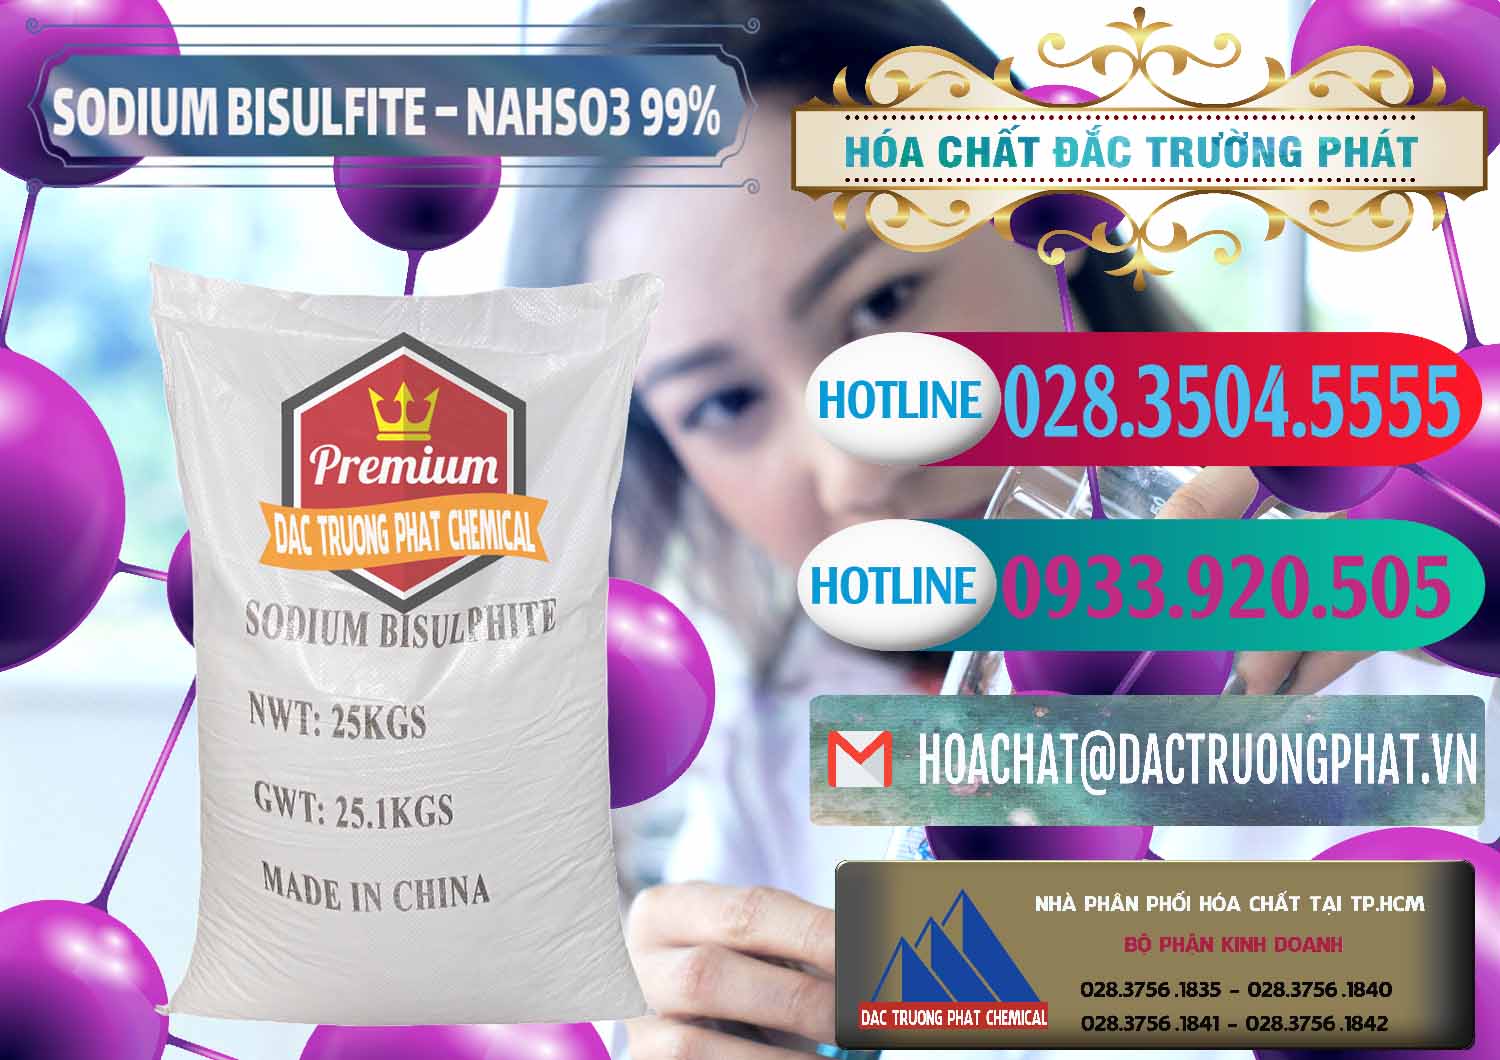 Đơn vị bán & phân phối Sodium Bisulfite – NAHSO3 Trung Quốc China - 0140 - Đơn vị cung cấp ( nhập khẩu ) hóa chất tại TP.HCM - truongphat.vn